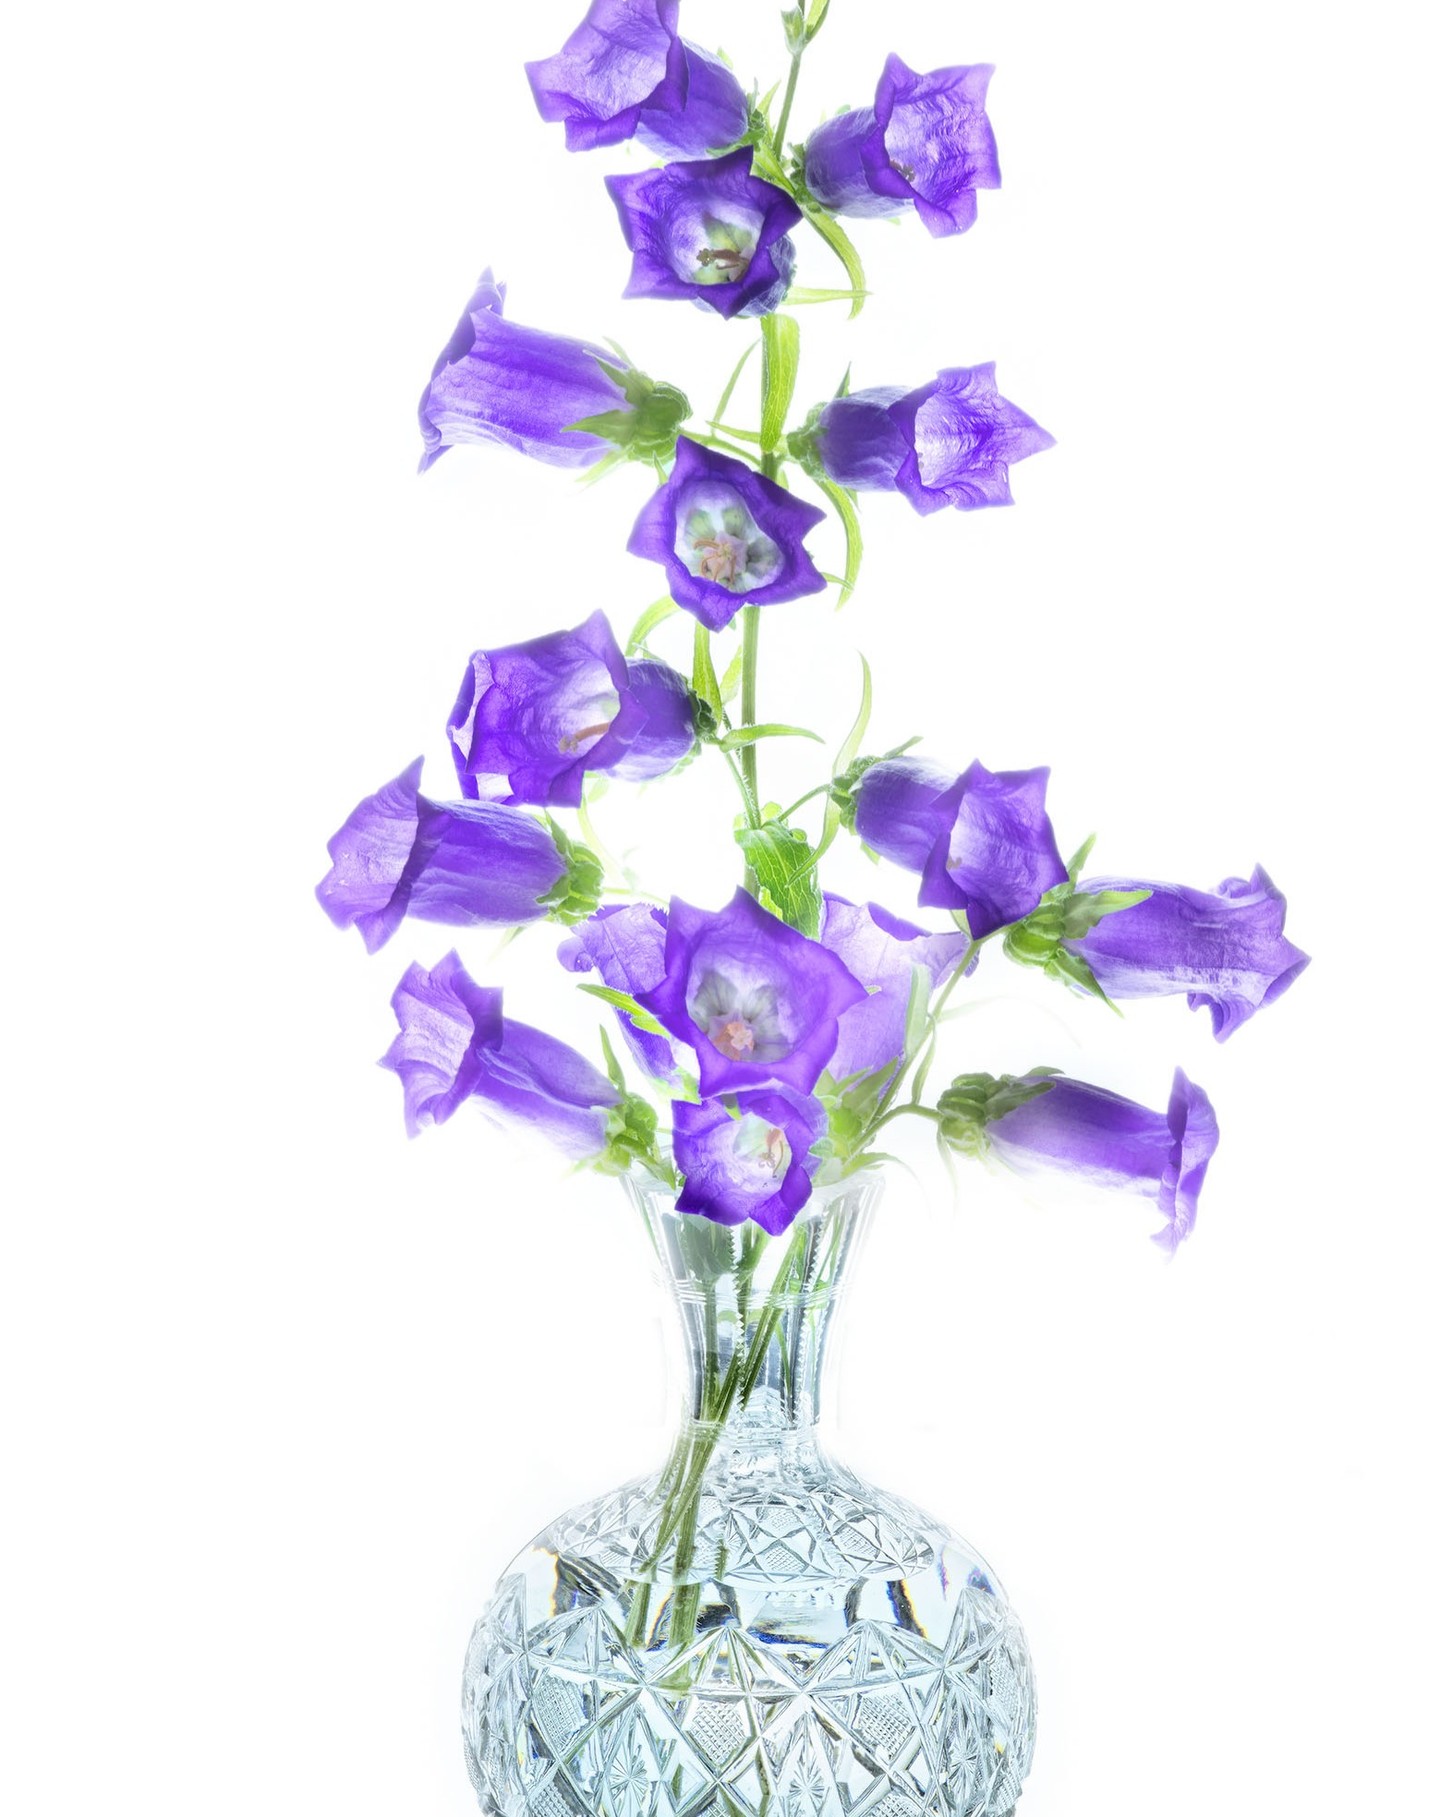 Campanulas in a Vase © Harold Davis